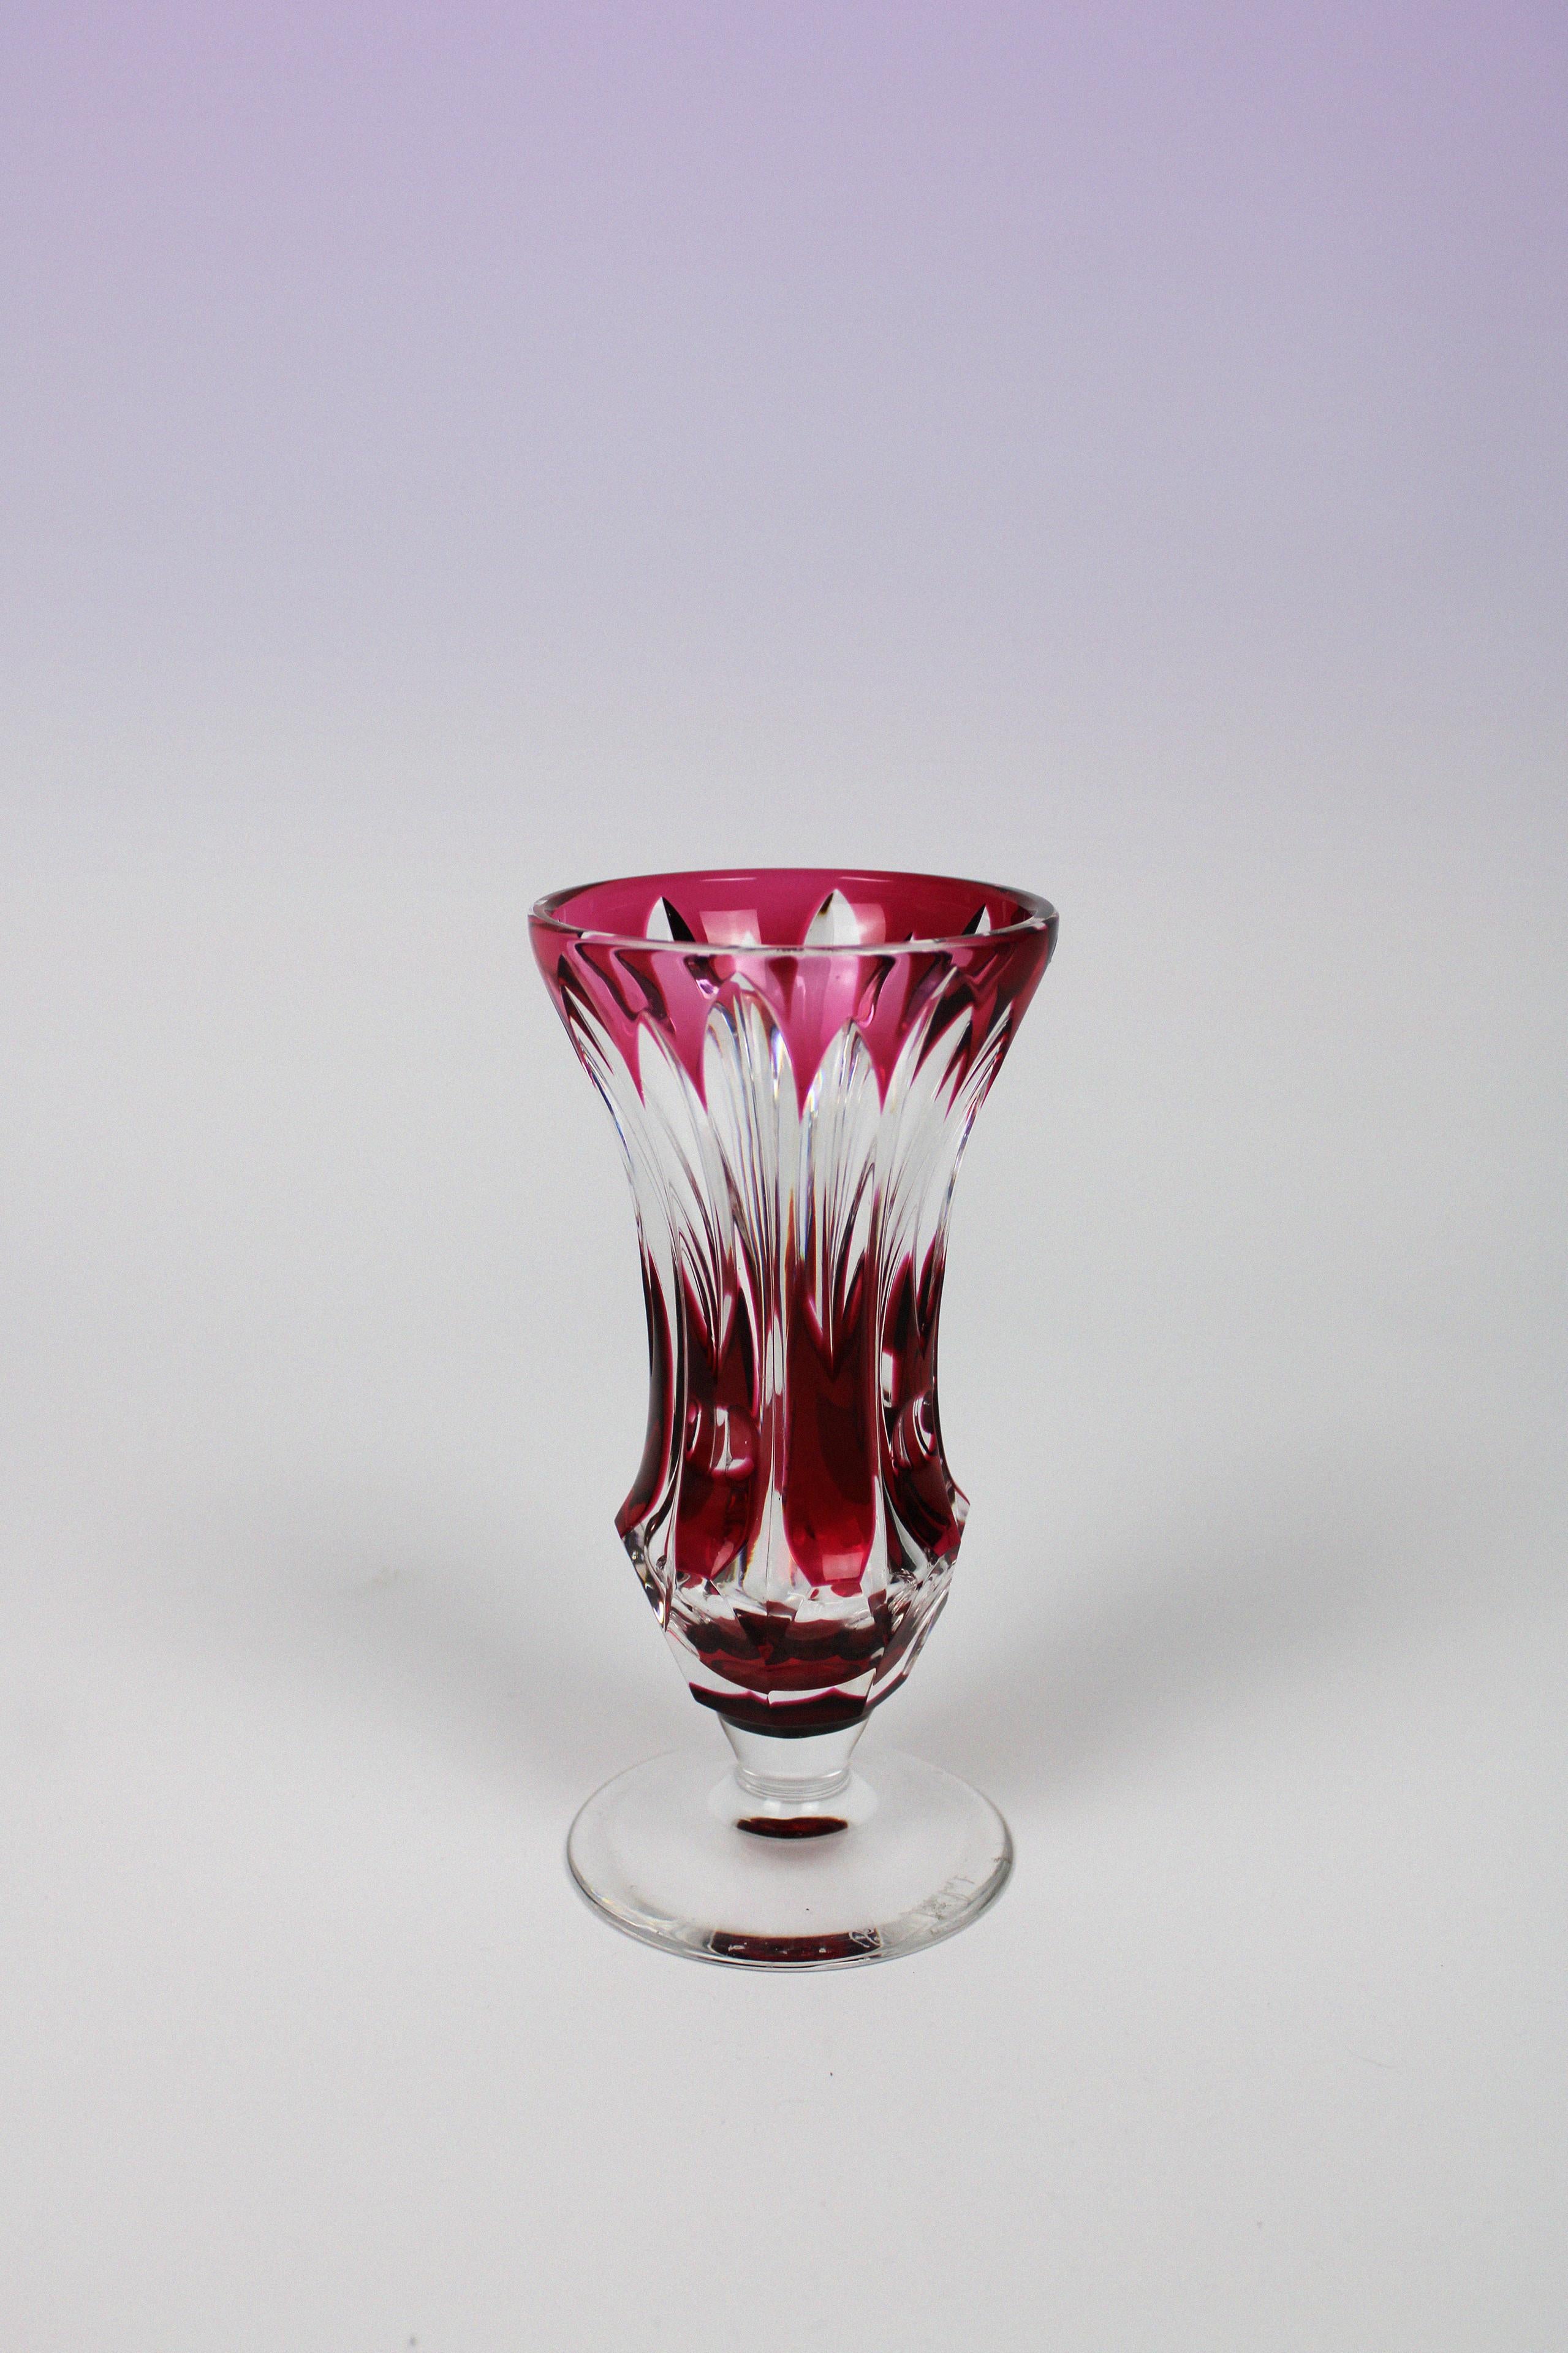 Diese originelle und bezaubernde Vase von Val St. Lambert, einer belgischen Manufaktur, die für ihre Glaswaren bekannt ist, zeigt auch mit dieser roten Vase, dass sie ihren Namen verdient. Die niedliche Form gebogen kurz mit einem Relief, das